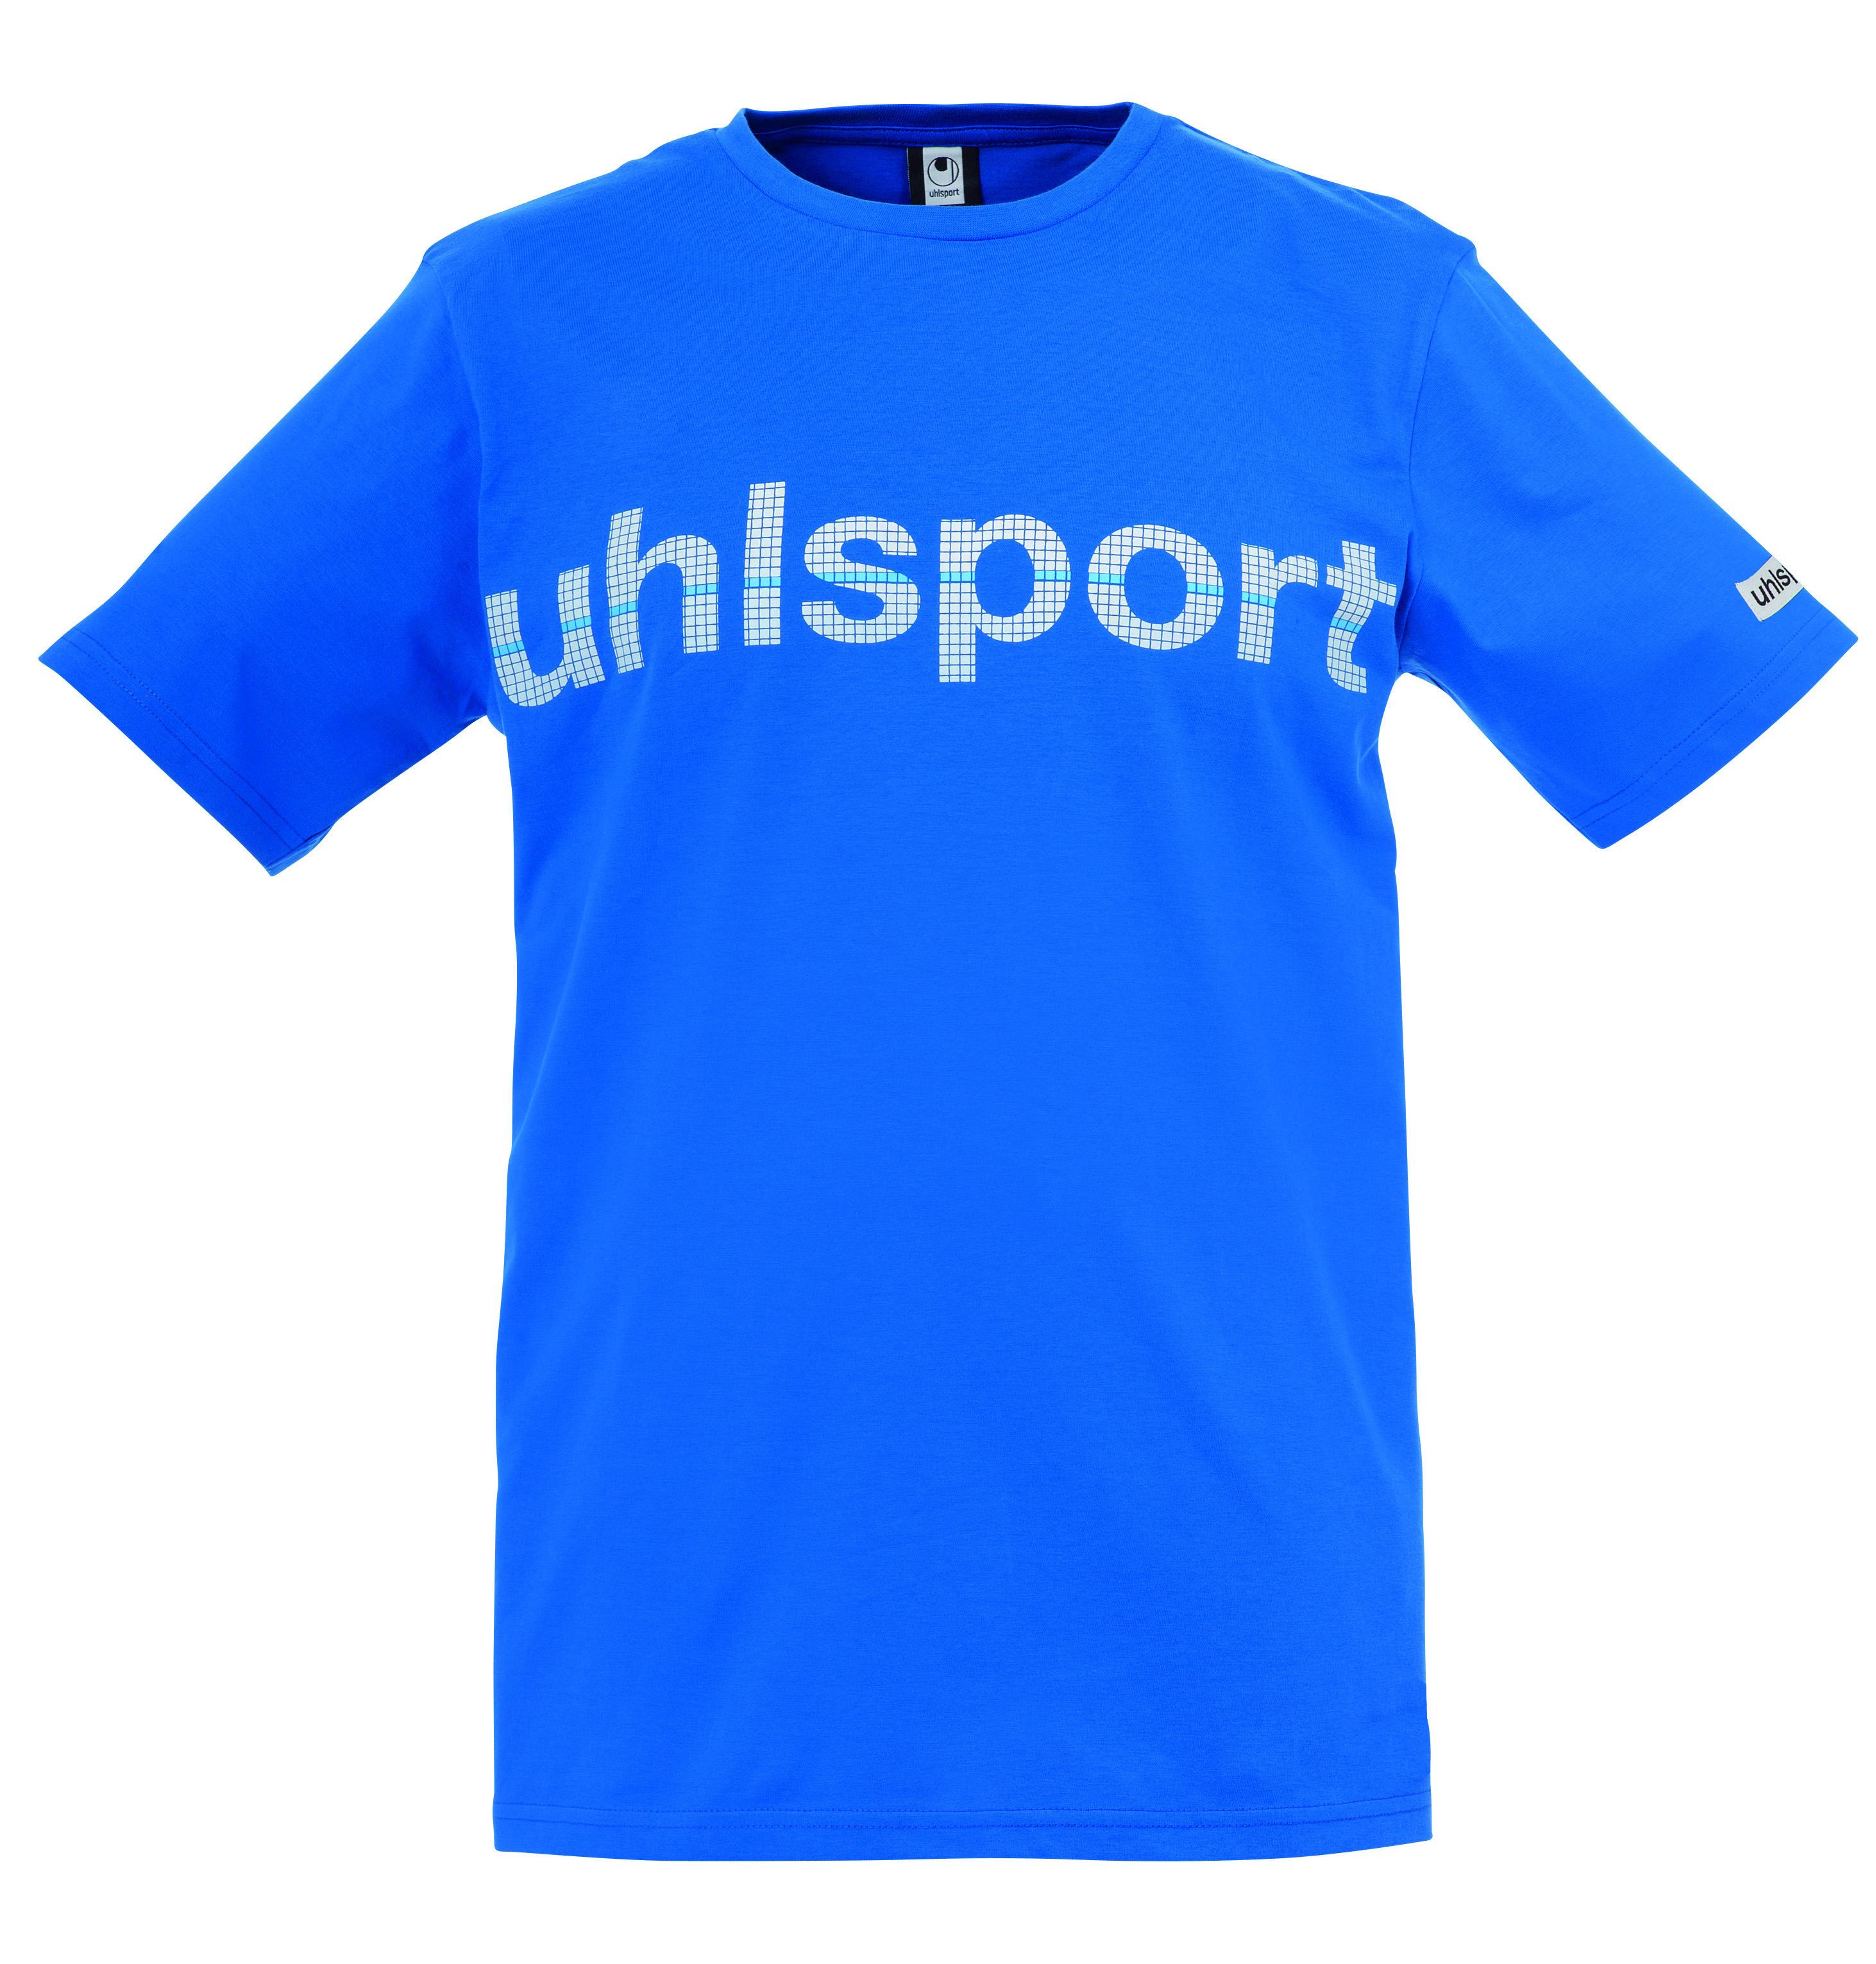 Uhlsport Promo Tee azurově modrá UK S